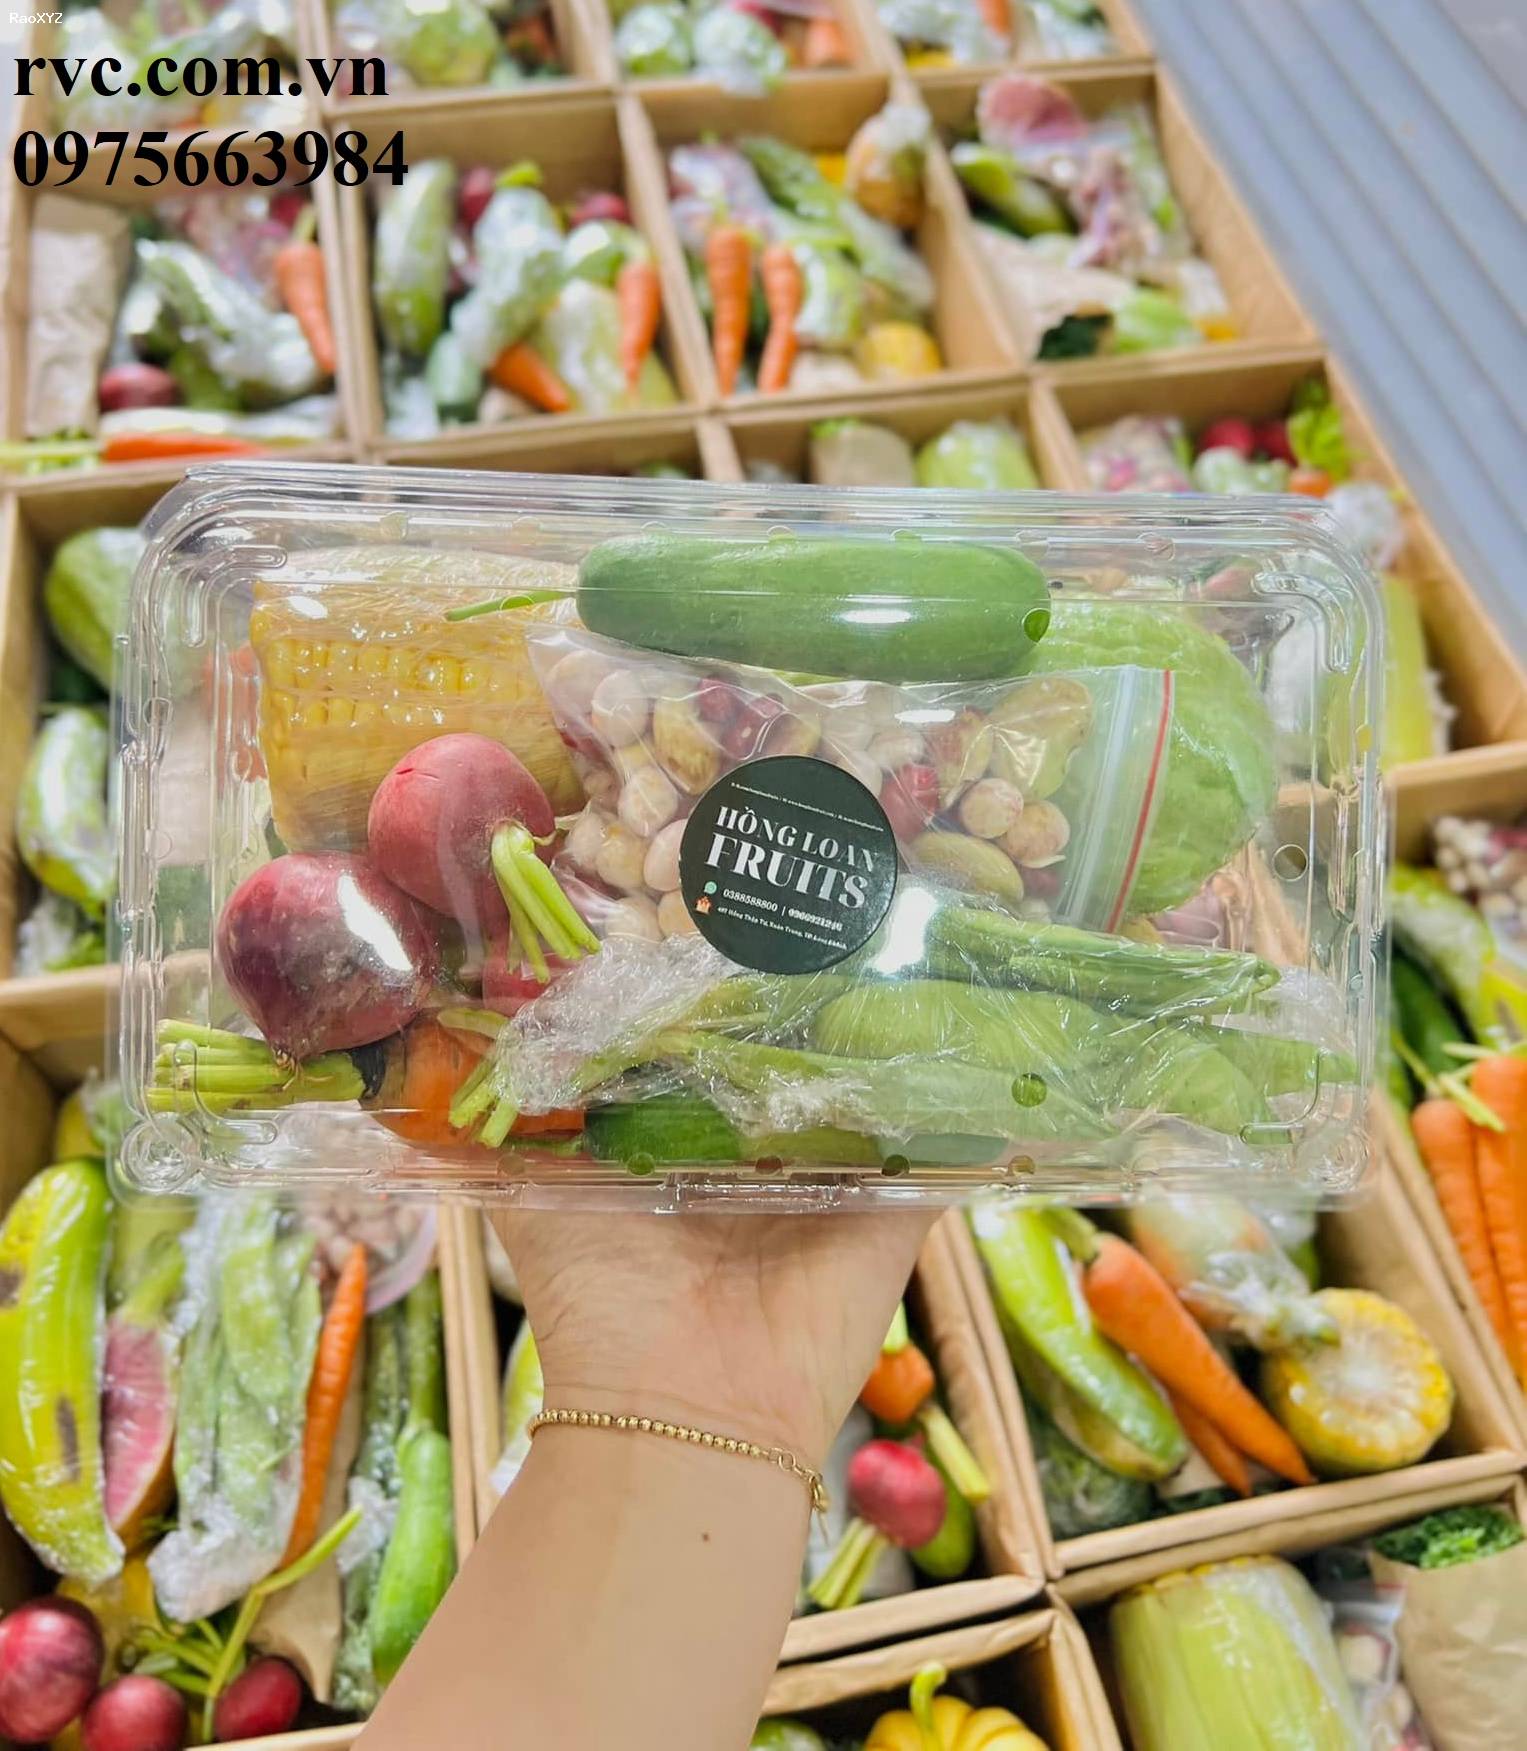 Mẫu hộp nhựa đựng trái cây 1kg được ưa chuộng nhất hiện nay.